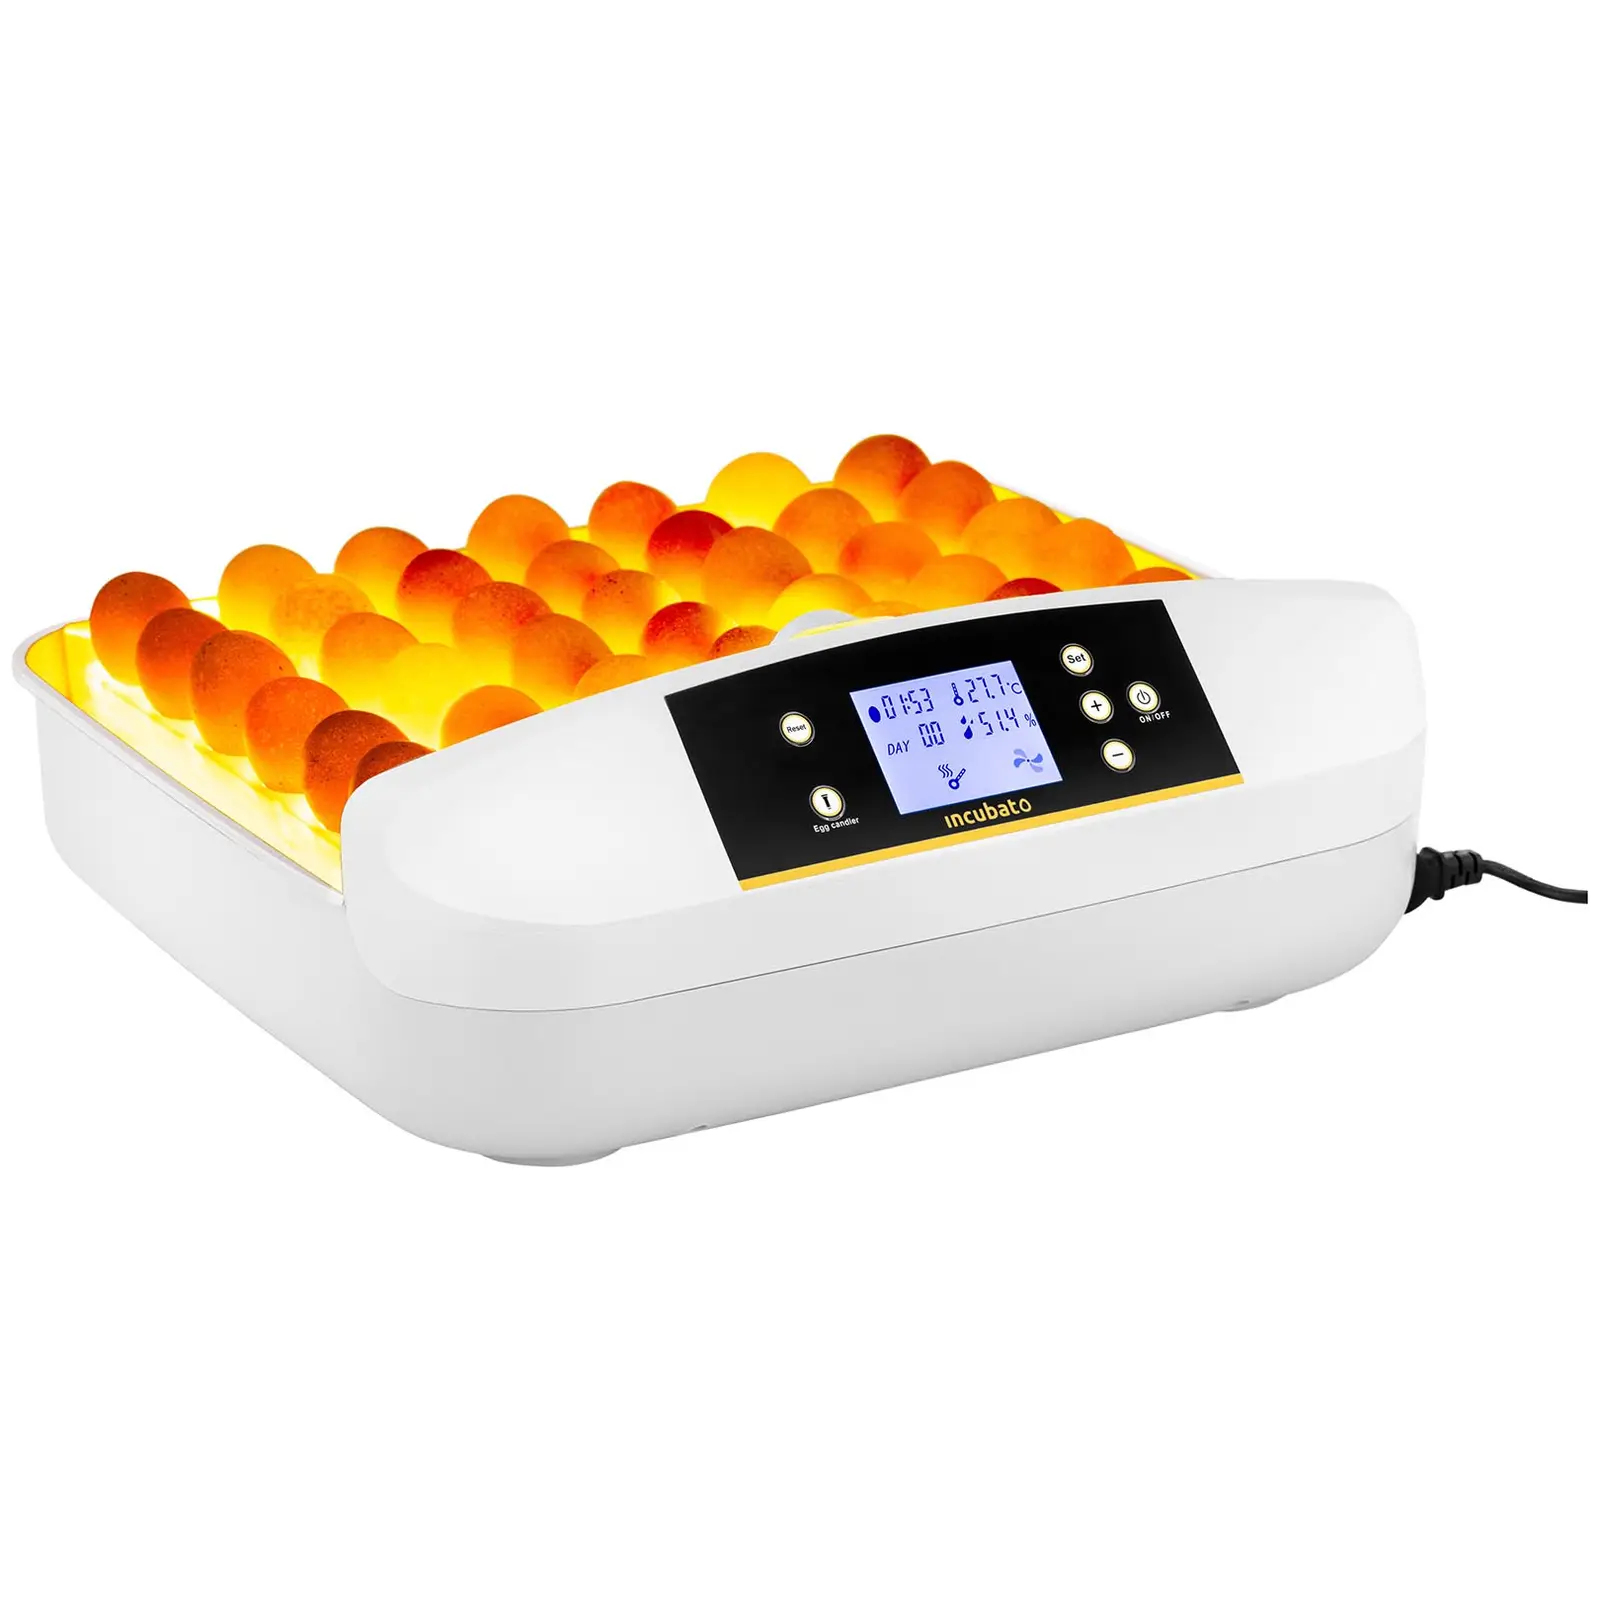 Incubatrice per uova professionale - 42 uova - Lampada sperauova integrata - Completamente automatica